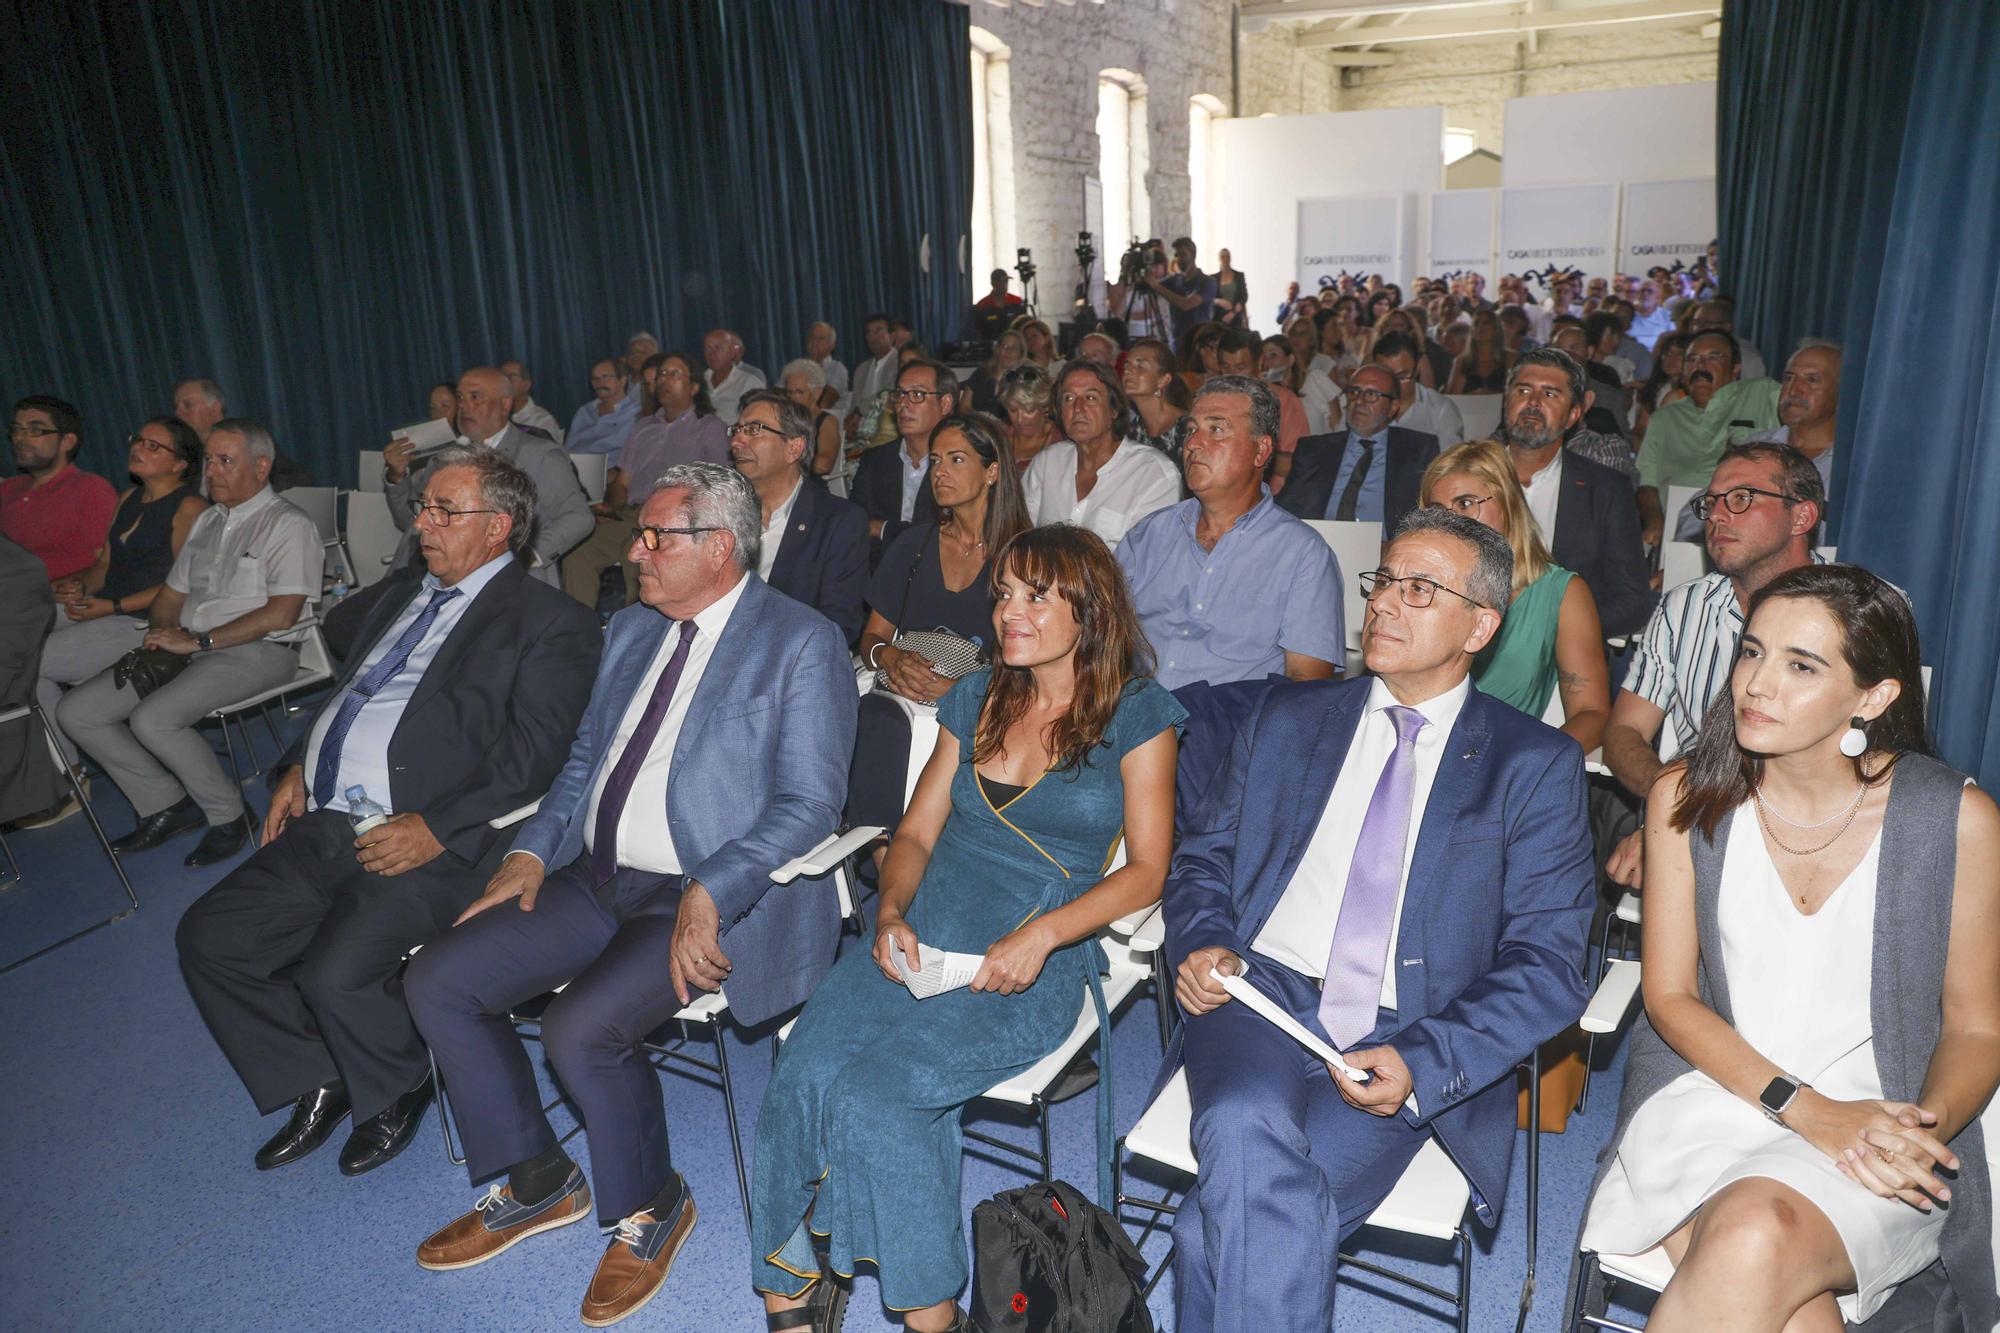 Las cooperativas de la Comunidad Valenciana ya facturan casi 9.000 millones de euros anuales